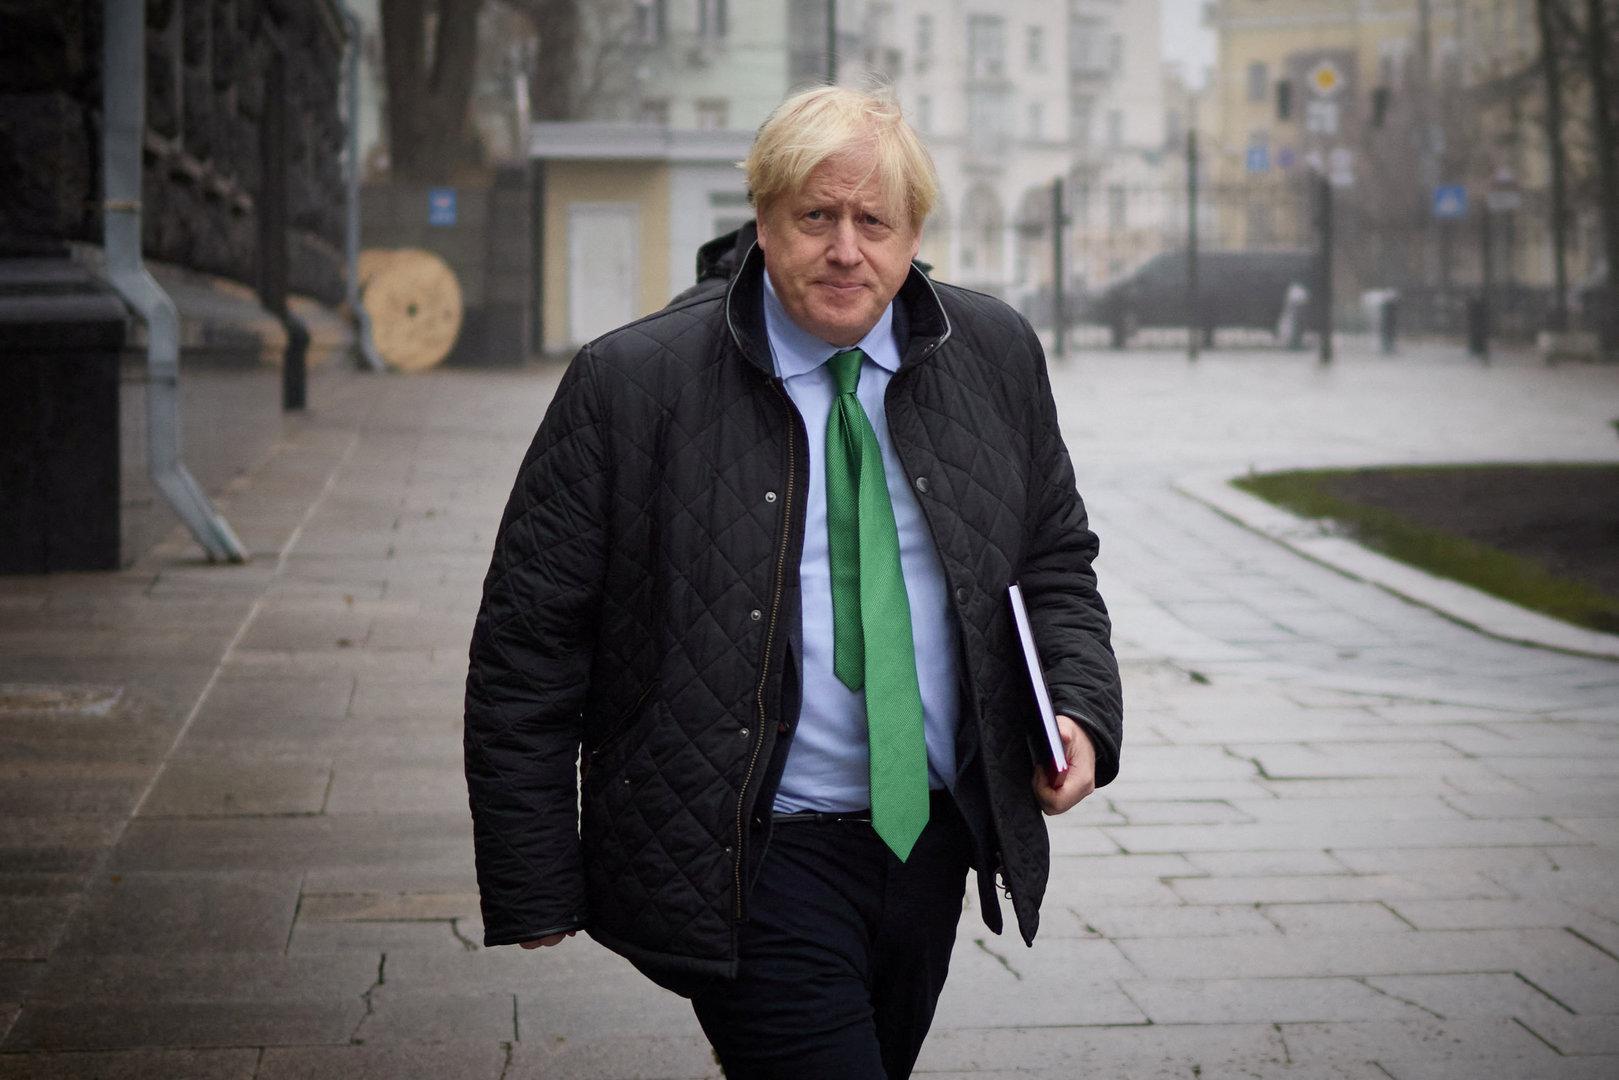 Putin zu Johnson: "Boris, ich will dir nicht weh tun"